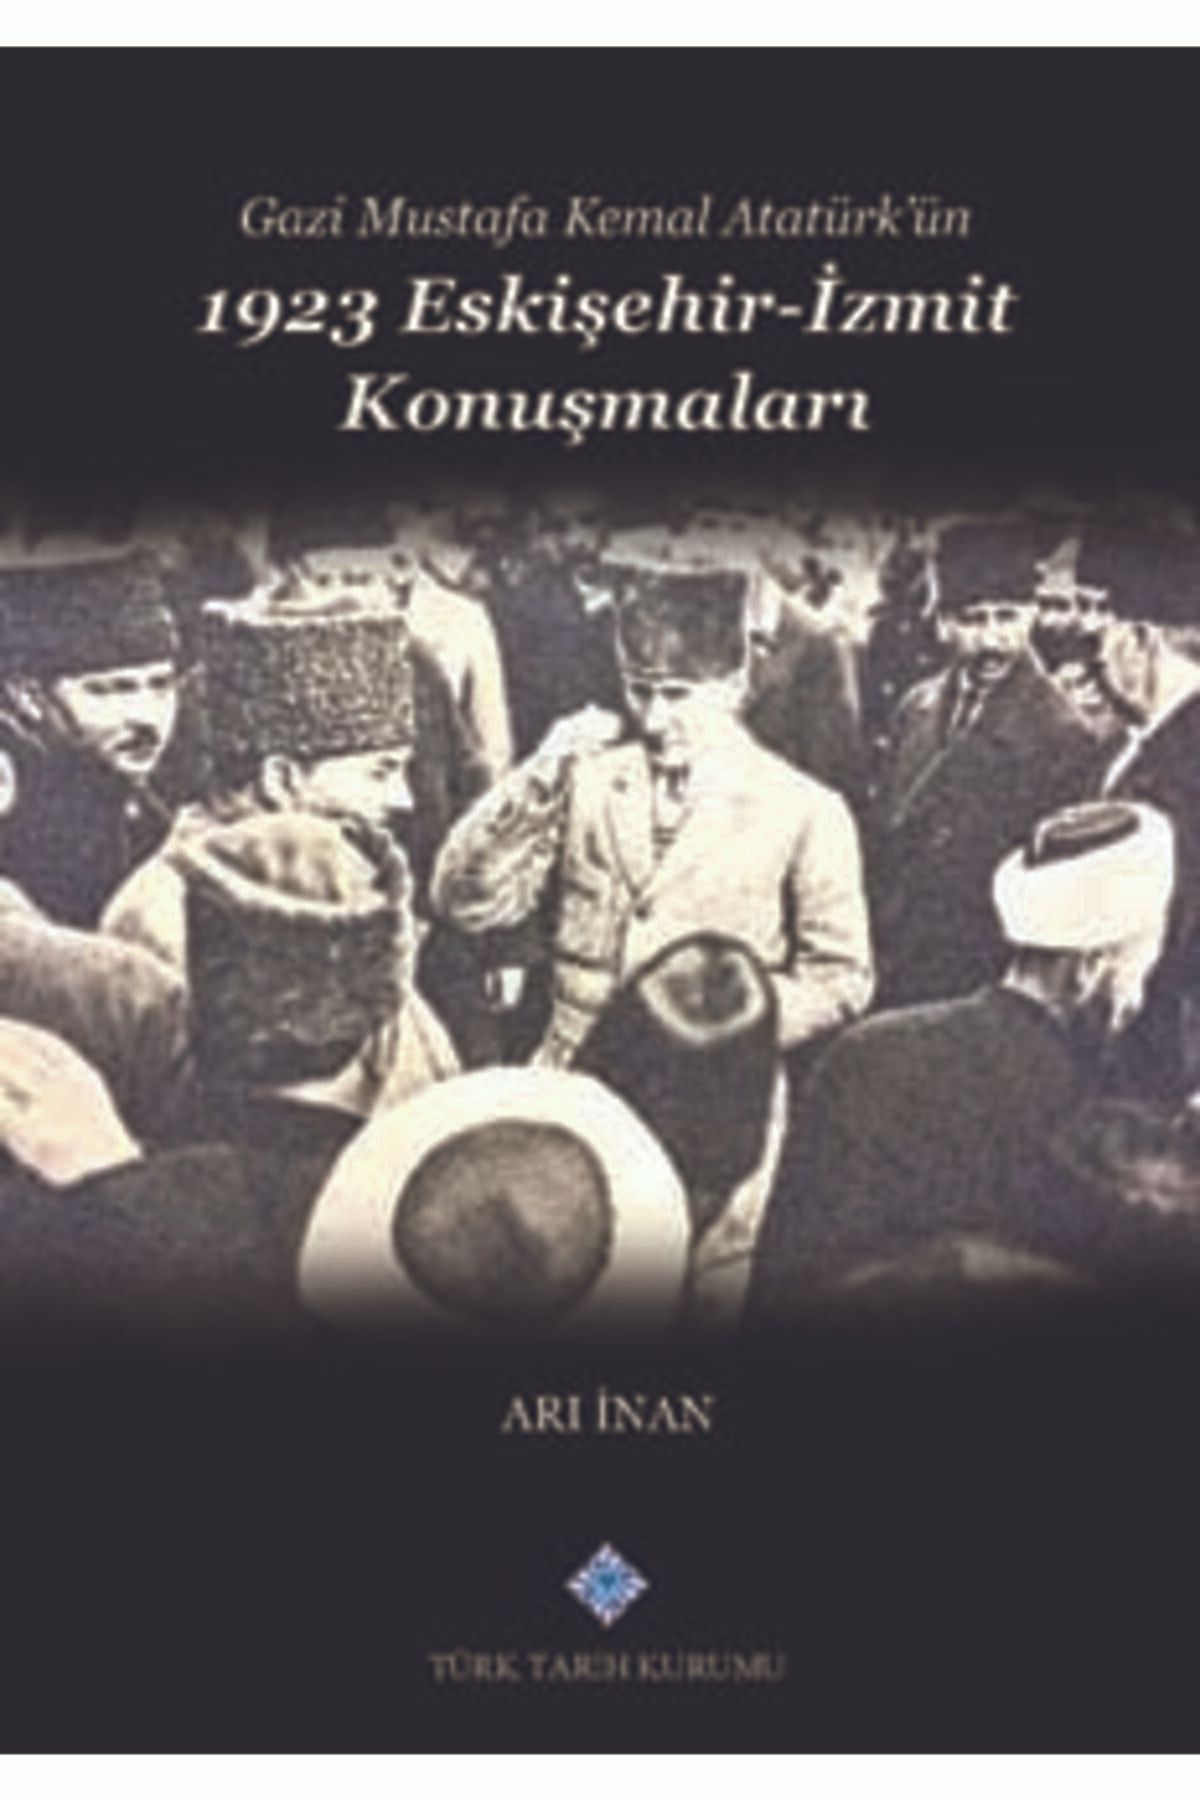 Türk Tarih Kurumu Yayınları Gazi Mustafa Kemal Atatürk'ün 1923 Eskişehir -İzmit Konuşmaları- Arı İnan